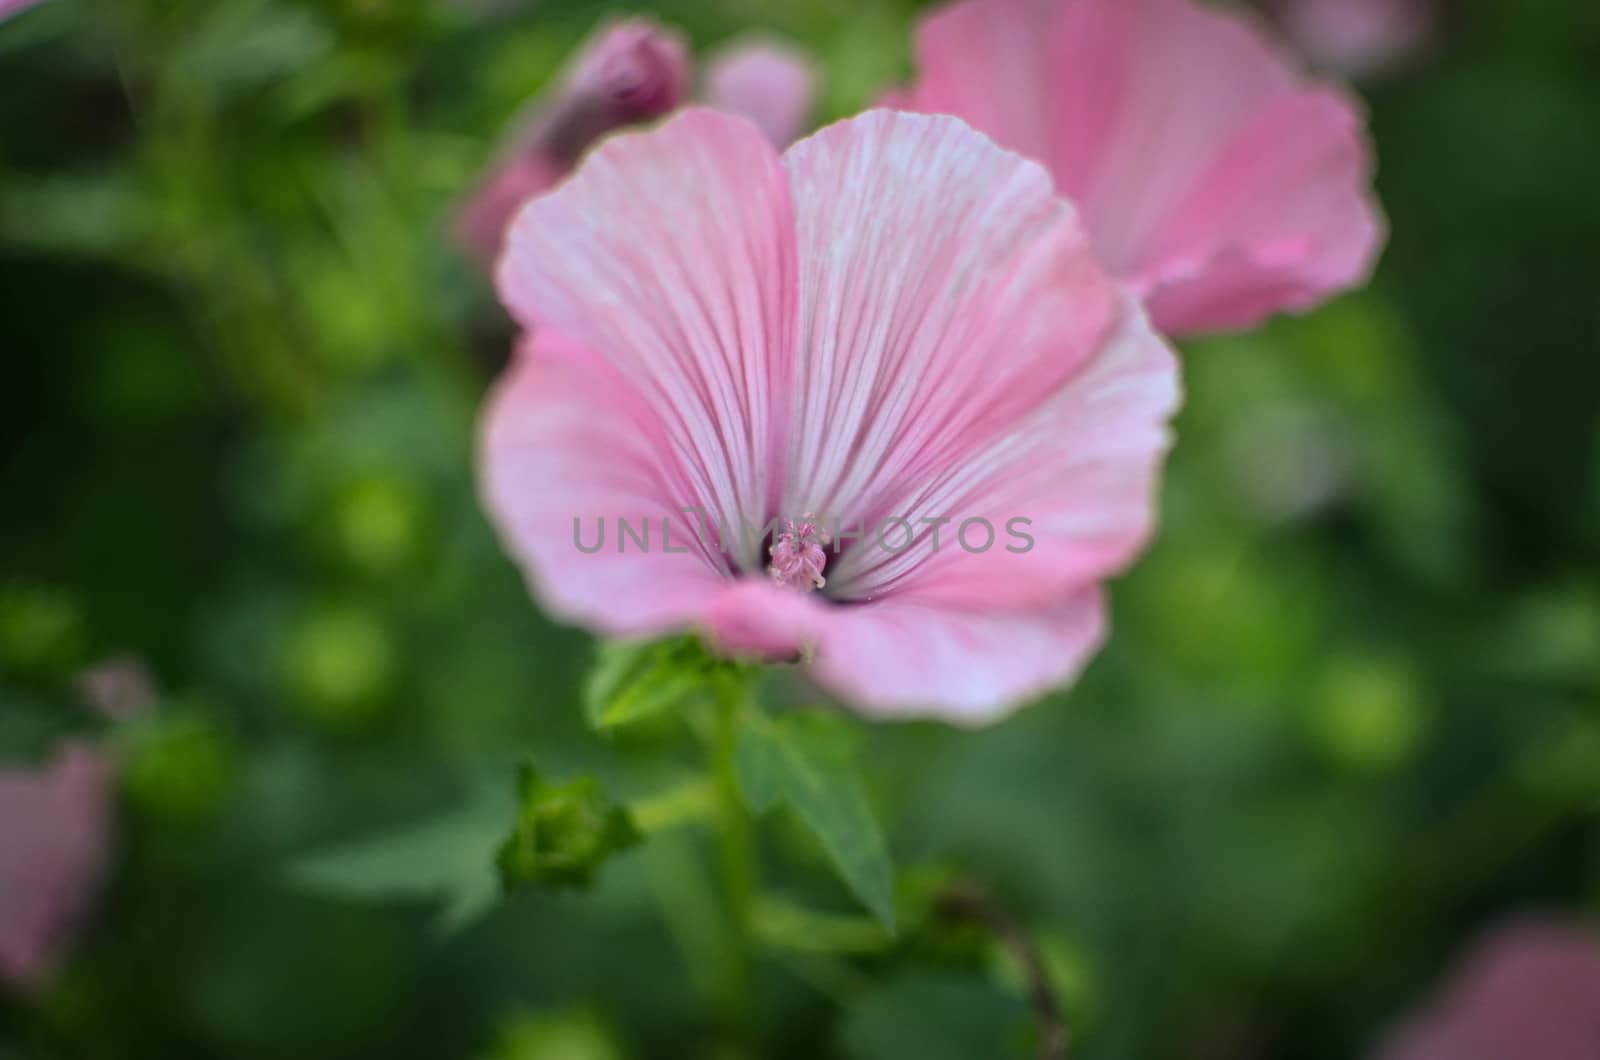 Big beautiful pink flowers ofLavatera closeup by kimbo-bo